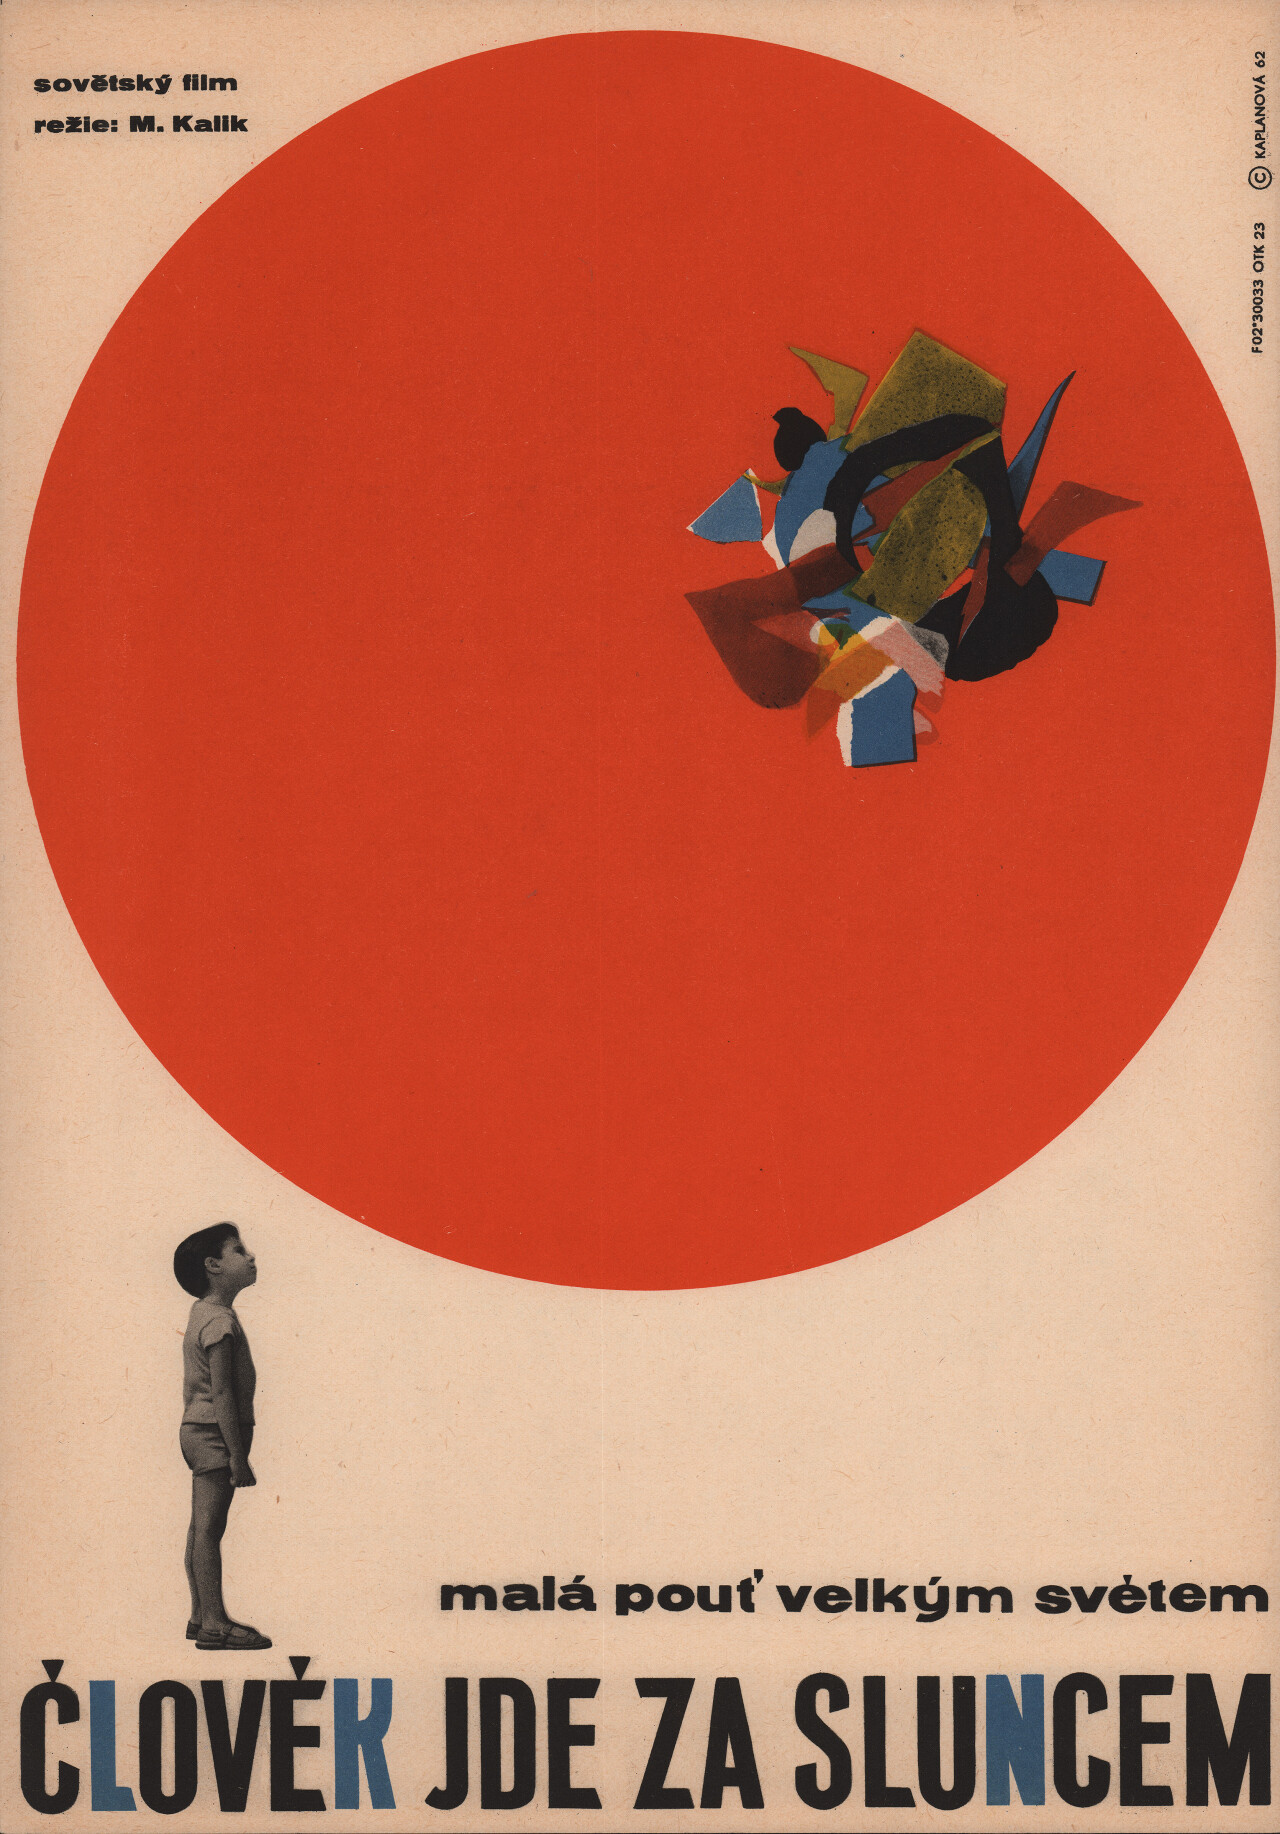 Человек идет за солнцем (Sandu Follows the Sun, 1963), режиссёр Михаил Калик, чехословацкий постер к фильму, автор Либуше Капланова (графический дизайн, 1962 год)